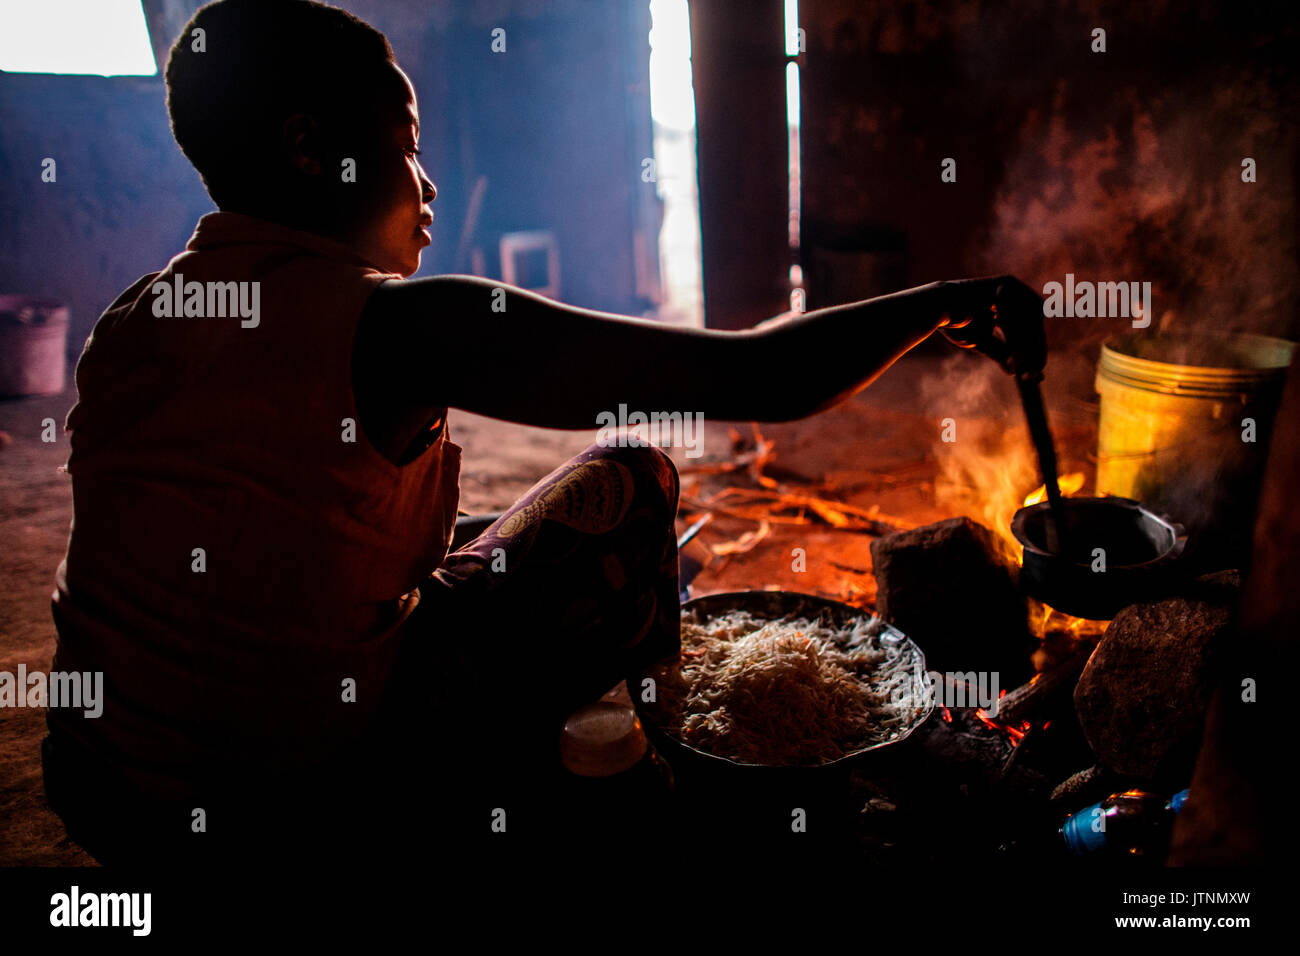 Ester Hodari, Alter 22 Jahre alt, kocht das Abendessen mit dem traditionellen 3-rock Koch Herd mit einem Feuer in der Mitte. Diese cookstoves verwenden eine Menge Kraftstoff, Brennholz, und viel Rauch erzeugen. Ester sagte uns, dass das Kochen mit dieser Art von Herd ihre Augen sind rot und Sie mussten oft eine Brust Husten. Ihre Kinder im Alter von 5, 2 und 3 Monaten werden oft mit ihr, als sie kocht. Ihre Schwägerin, shadya Dienstag, Alter 11, hilft ihr Kochen. Vor nicht allzu langer Zeit Esterâs 3 Monate alten einen Husten entwickelt, es wurde immer schlimmer und so nahmen sie Stockfoto